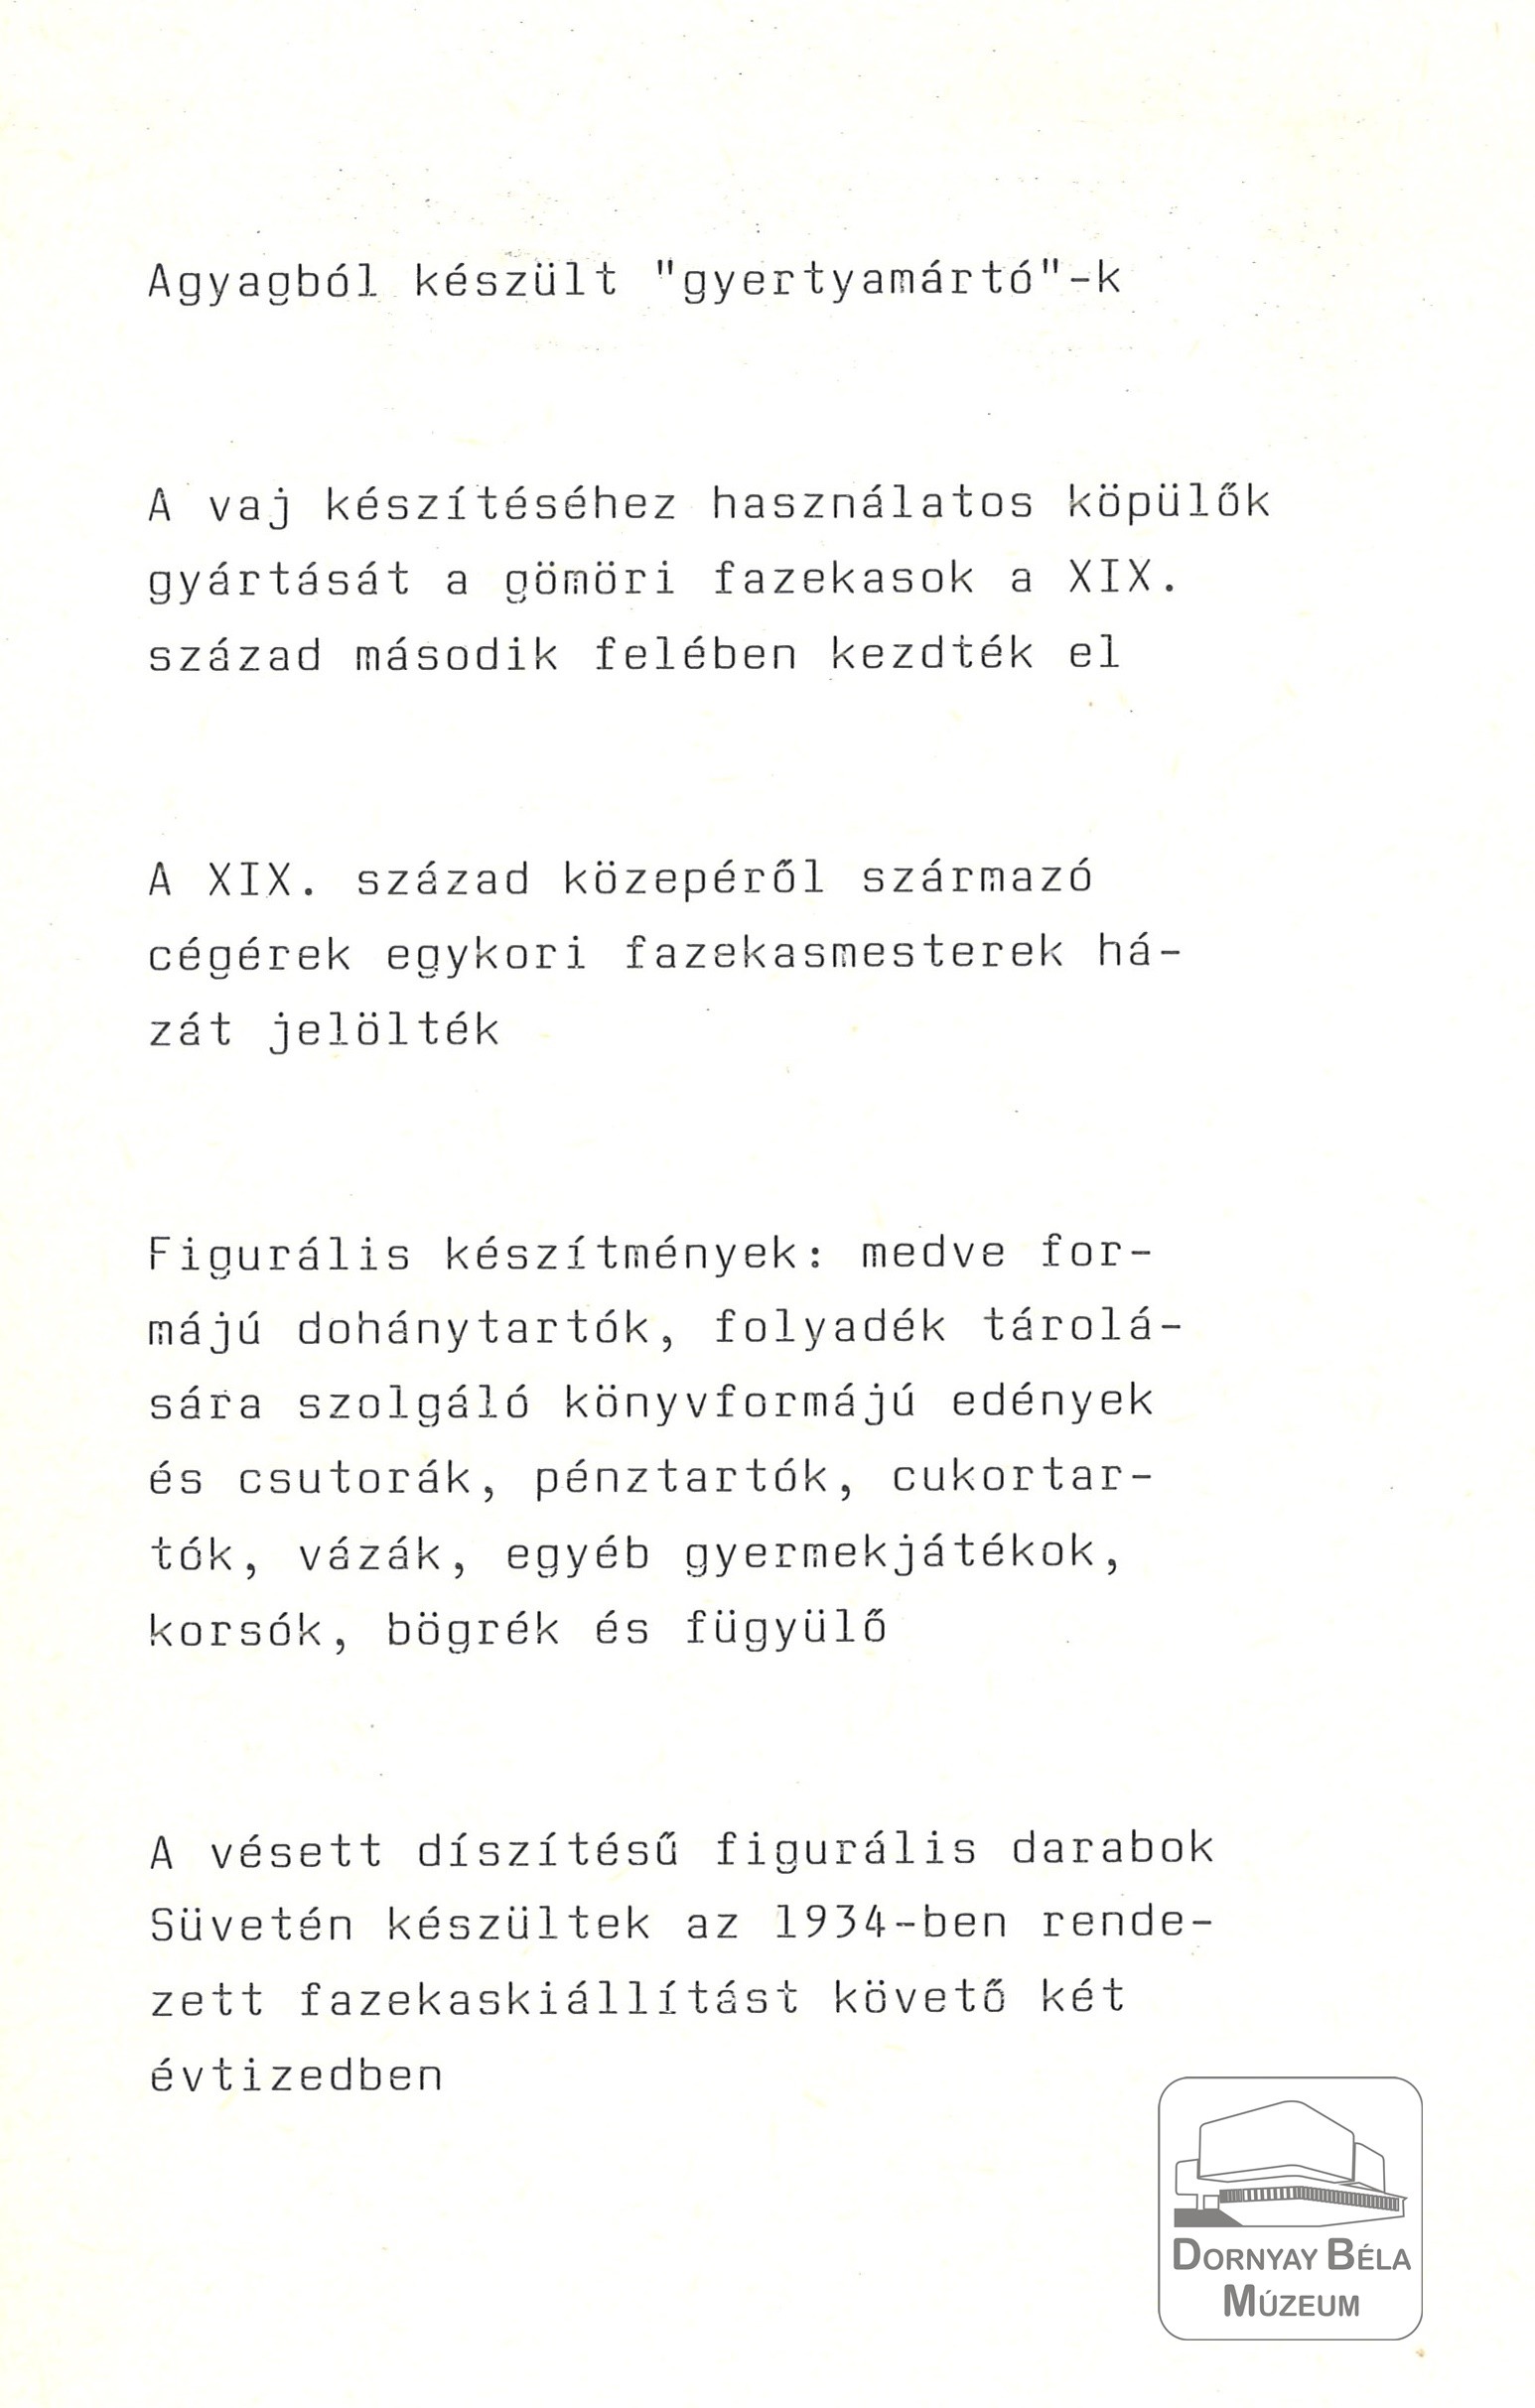 Gömör-Kishont Fazekassága című kiállítás szövegkönyve (Dornyay Béla Múzeum, Salgótarján CC BY-NC-SA)